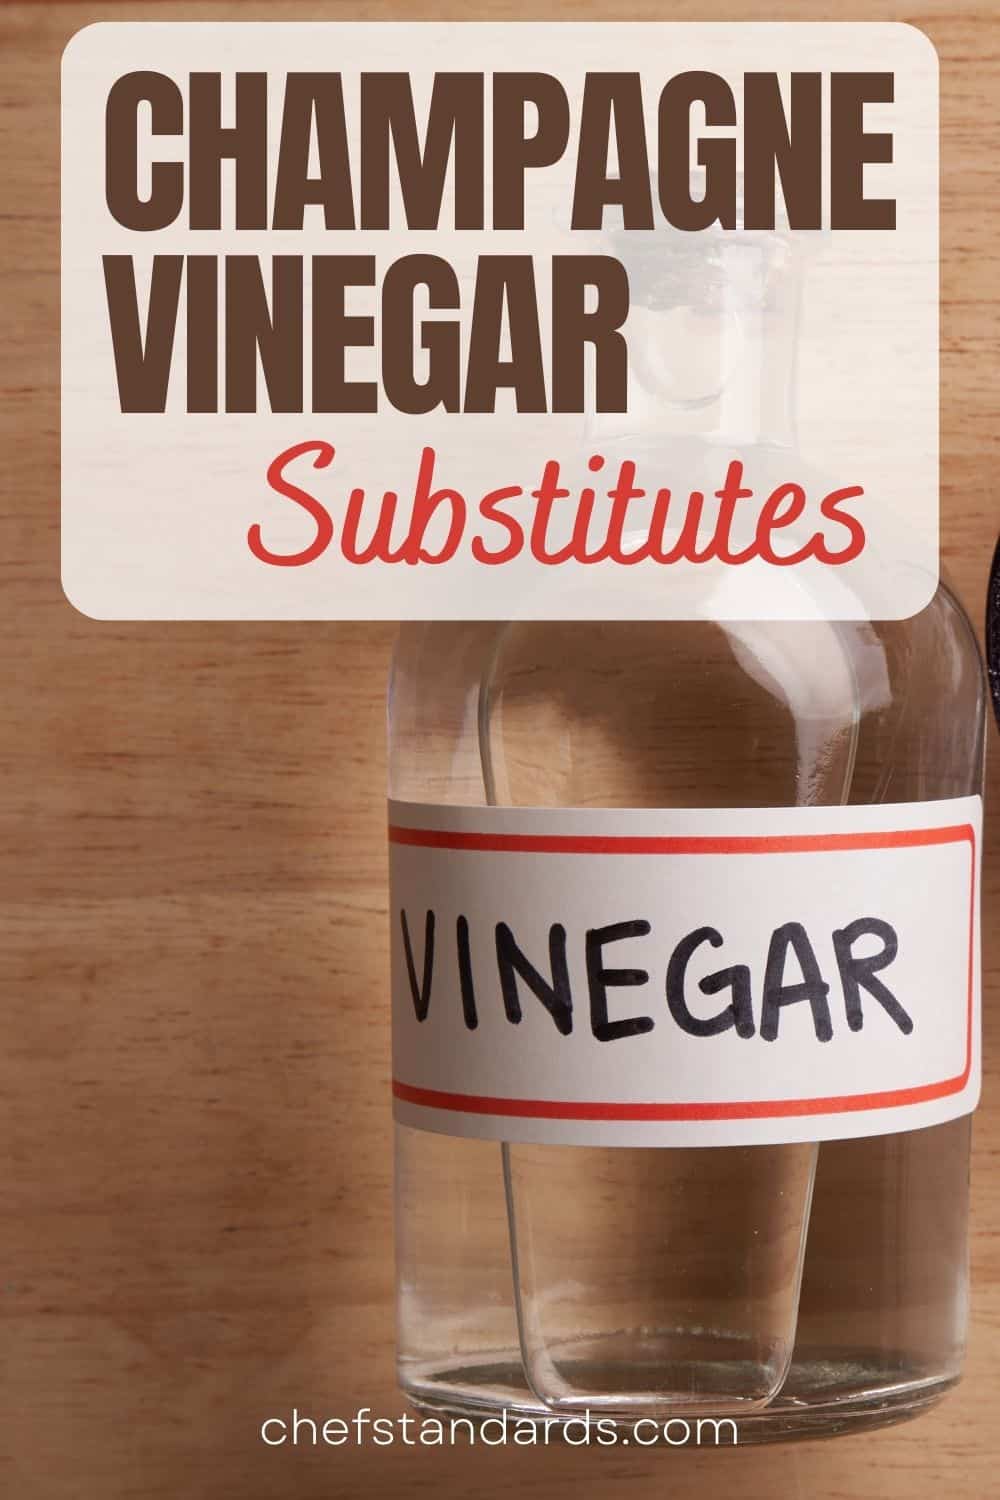 10 Best Champagne Vinegar Substitutes To Taste The Twist
